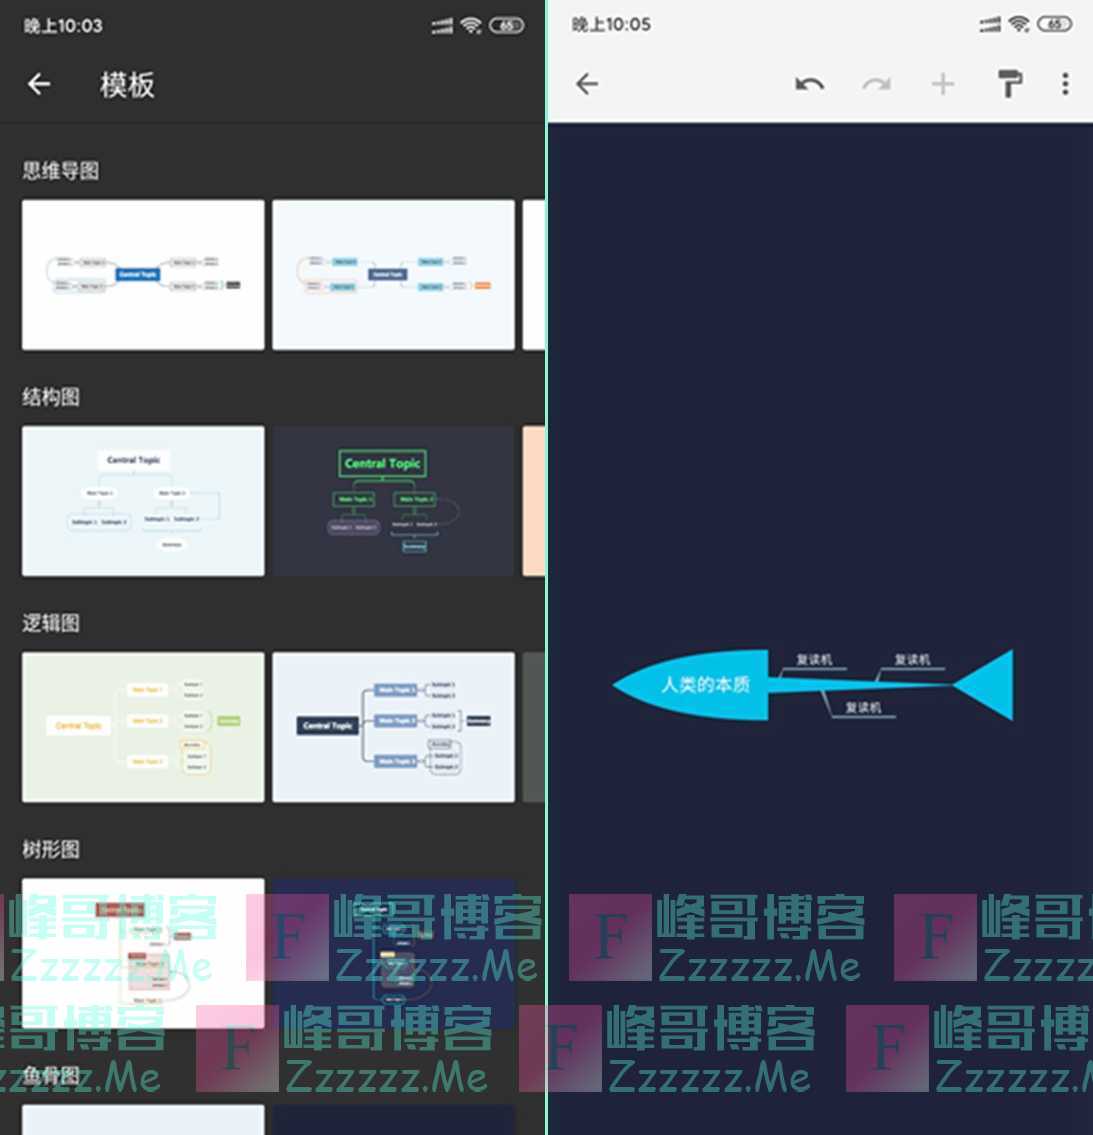 安卓思维导图软件XMind Pro V1.3.11 完美直装内购中文汉化破解版